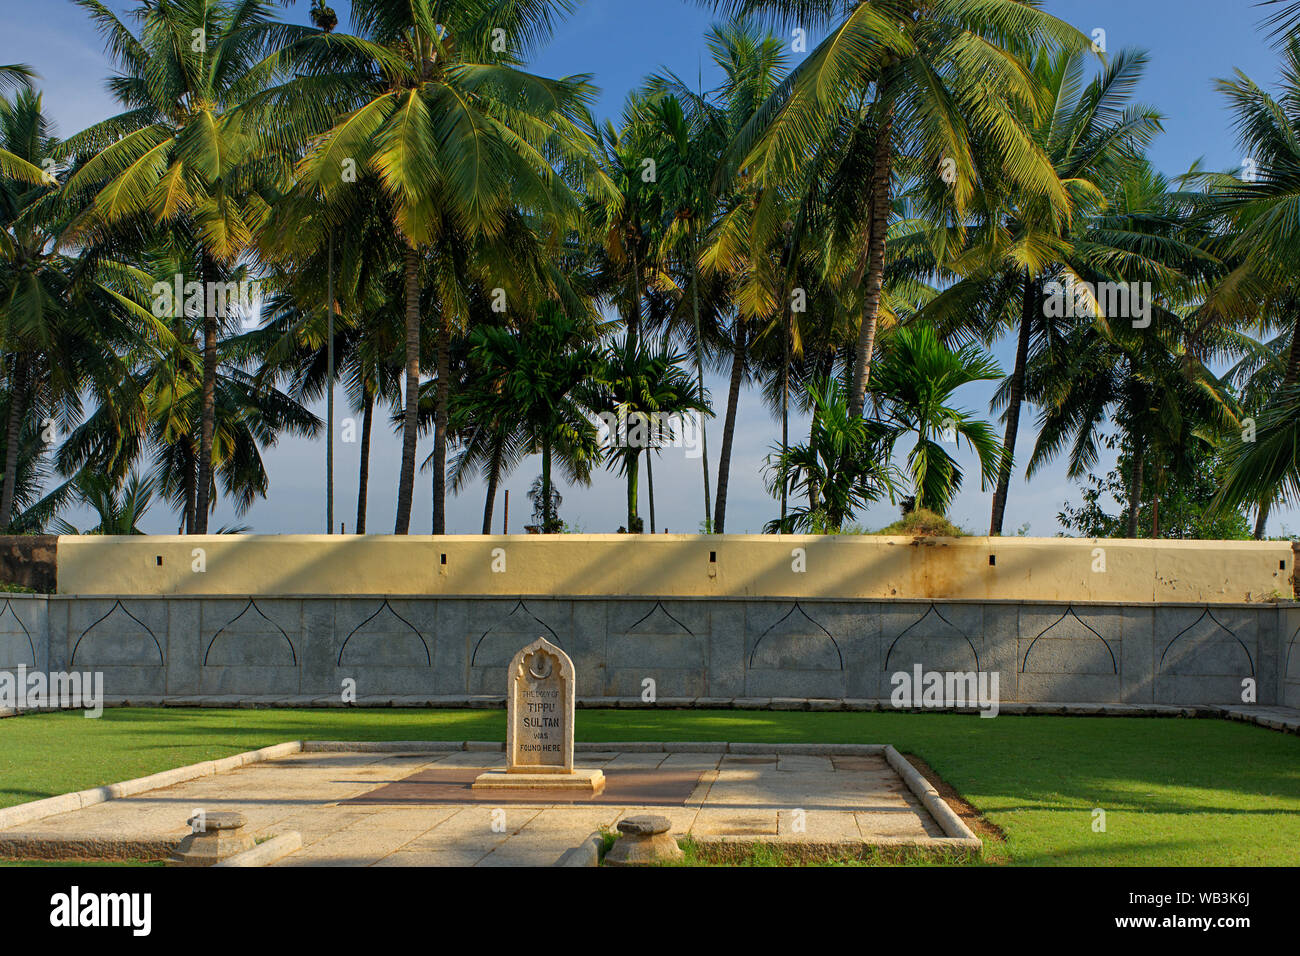 31 Okt 2009 - Ort des Martyriums: Die Stelle, wo Tippu Sultan's Körper gefunden wurde. in der Nähe von Mysore - karnatak - Indien Stockfoto